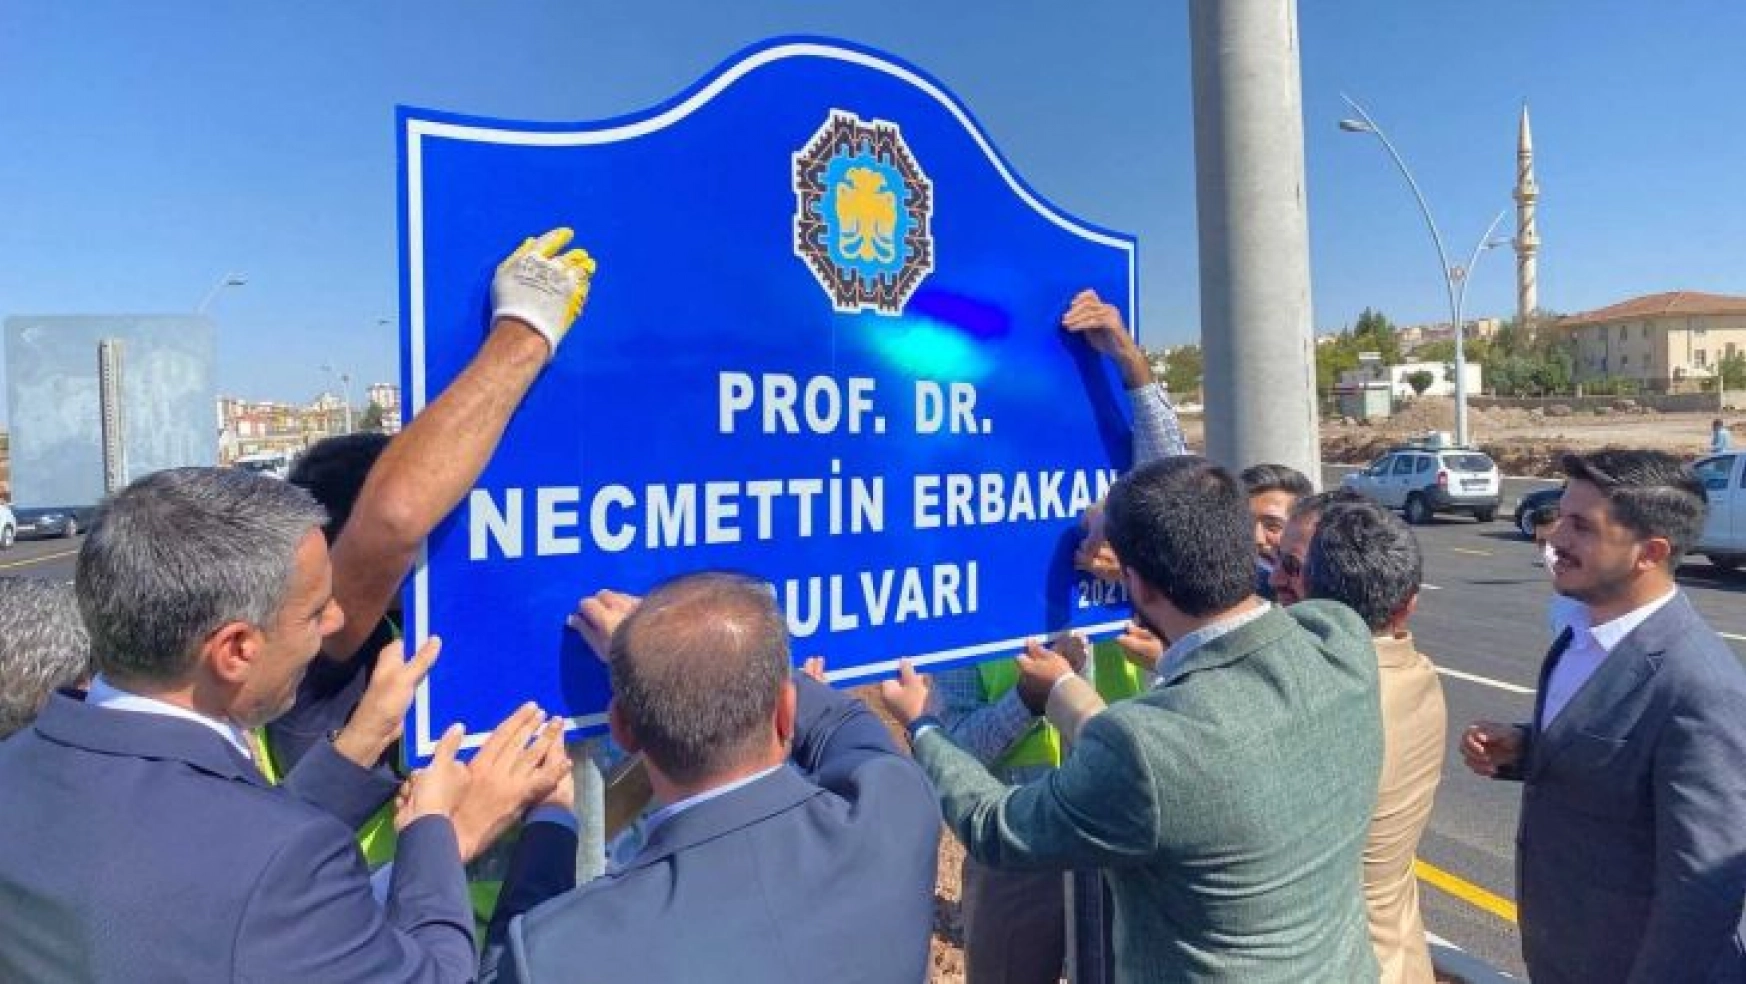 Yeni Açılan Bulvara Prof. Dr. Necmettin Erbakan'ın Adı Verildi